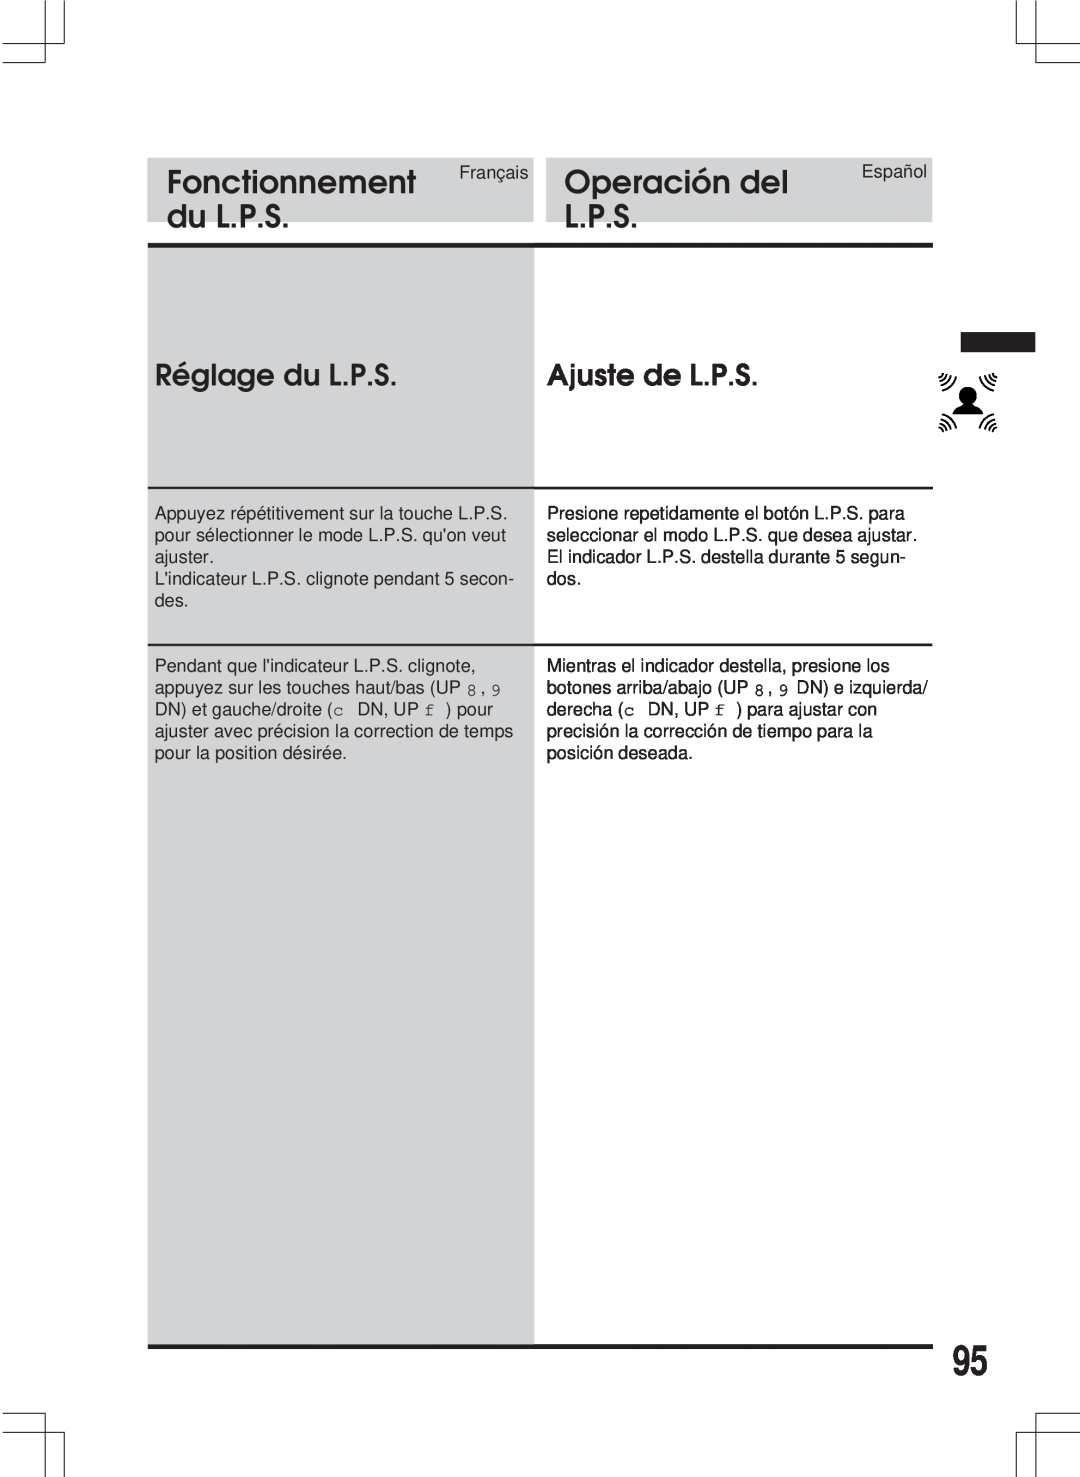 Alpine MDA-W890 Réglage du L.P.S, Ajuste de L.P.S, Fonctionnement, Operacióndeldel, dégaliseurL.P.S, Lecualizador.P.S 